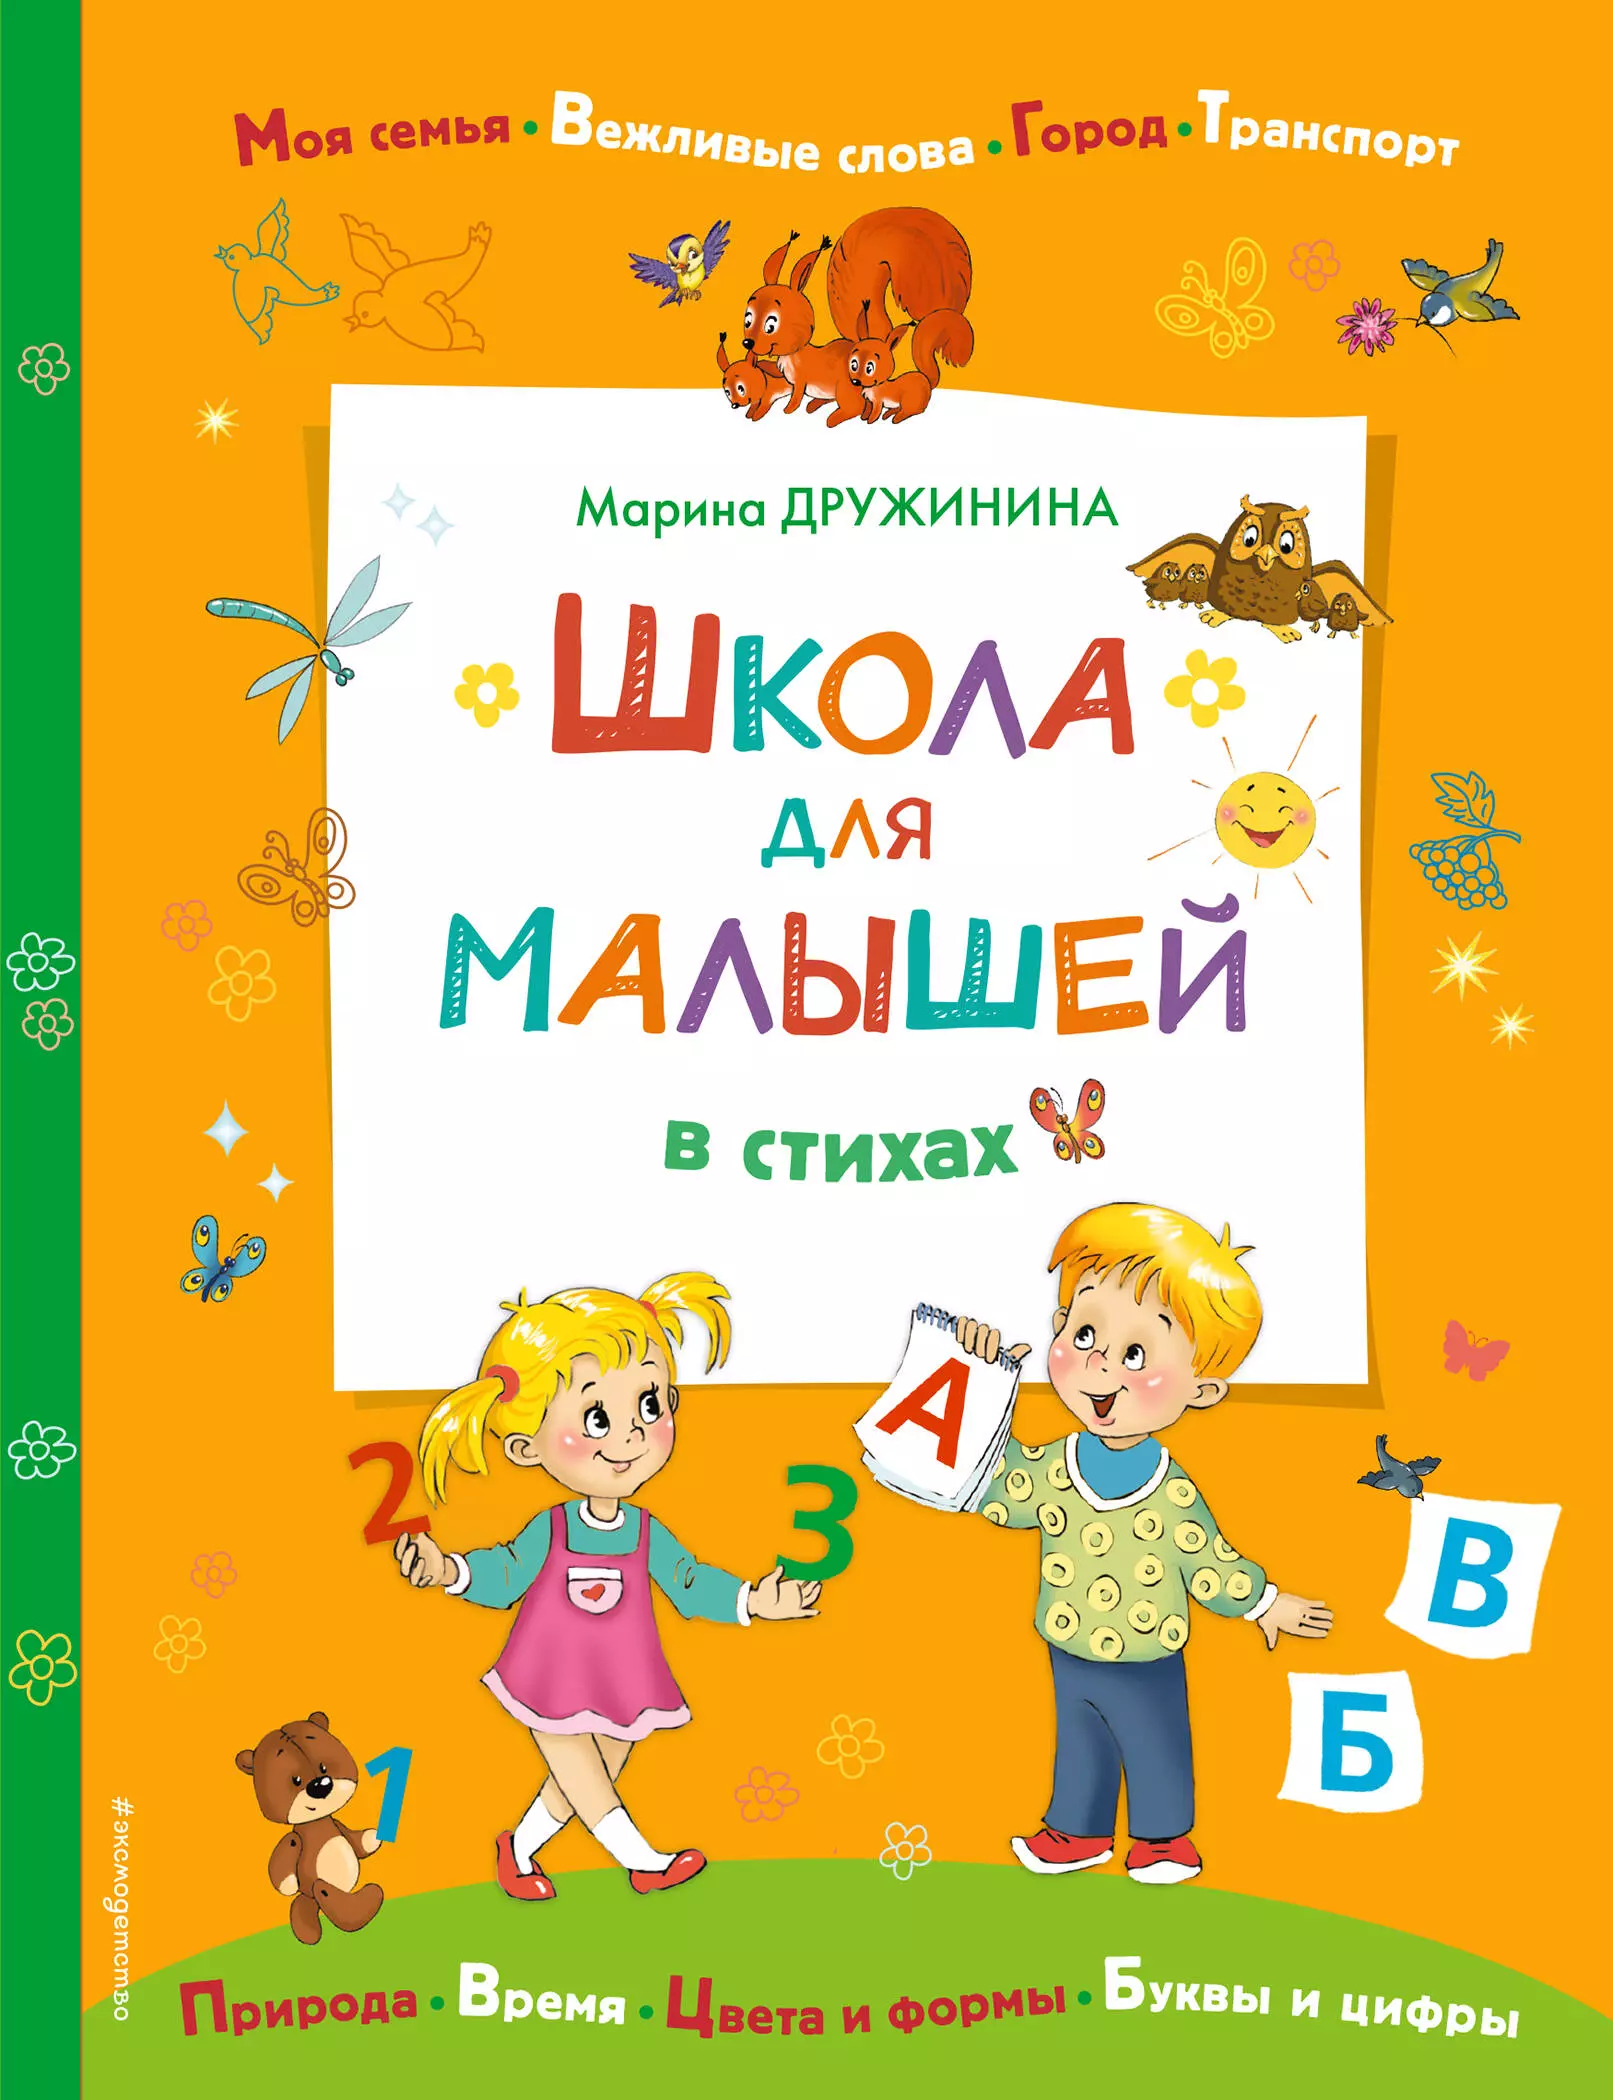 Дружинина Марина Владимировна - Школа для малышей в стихах